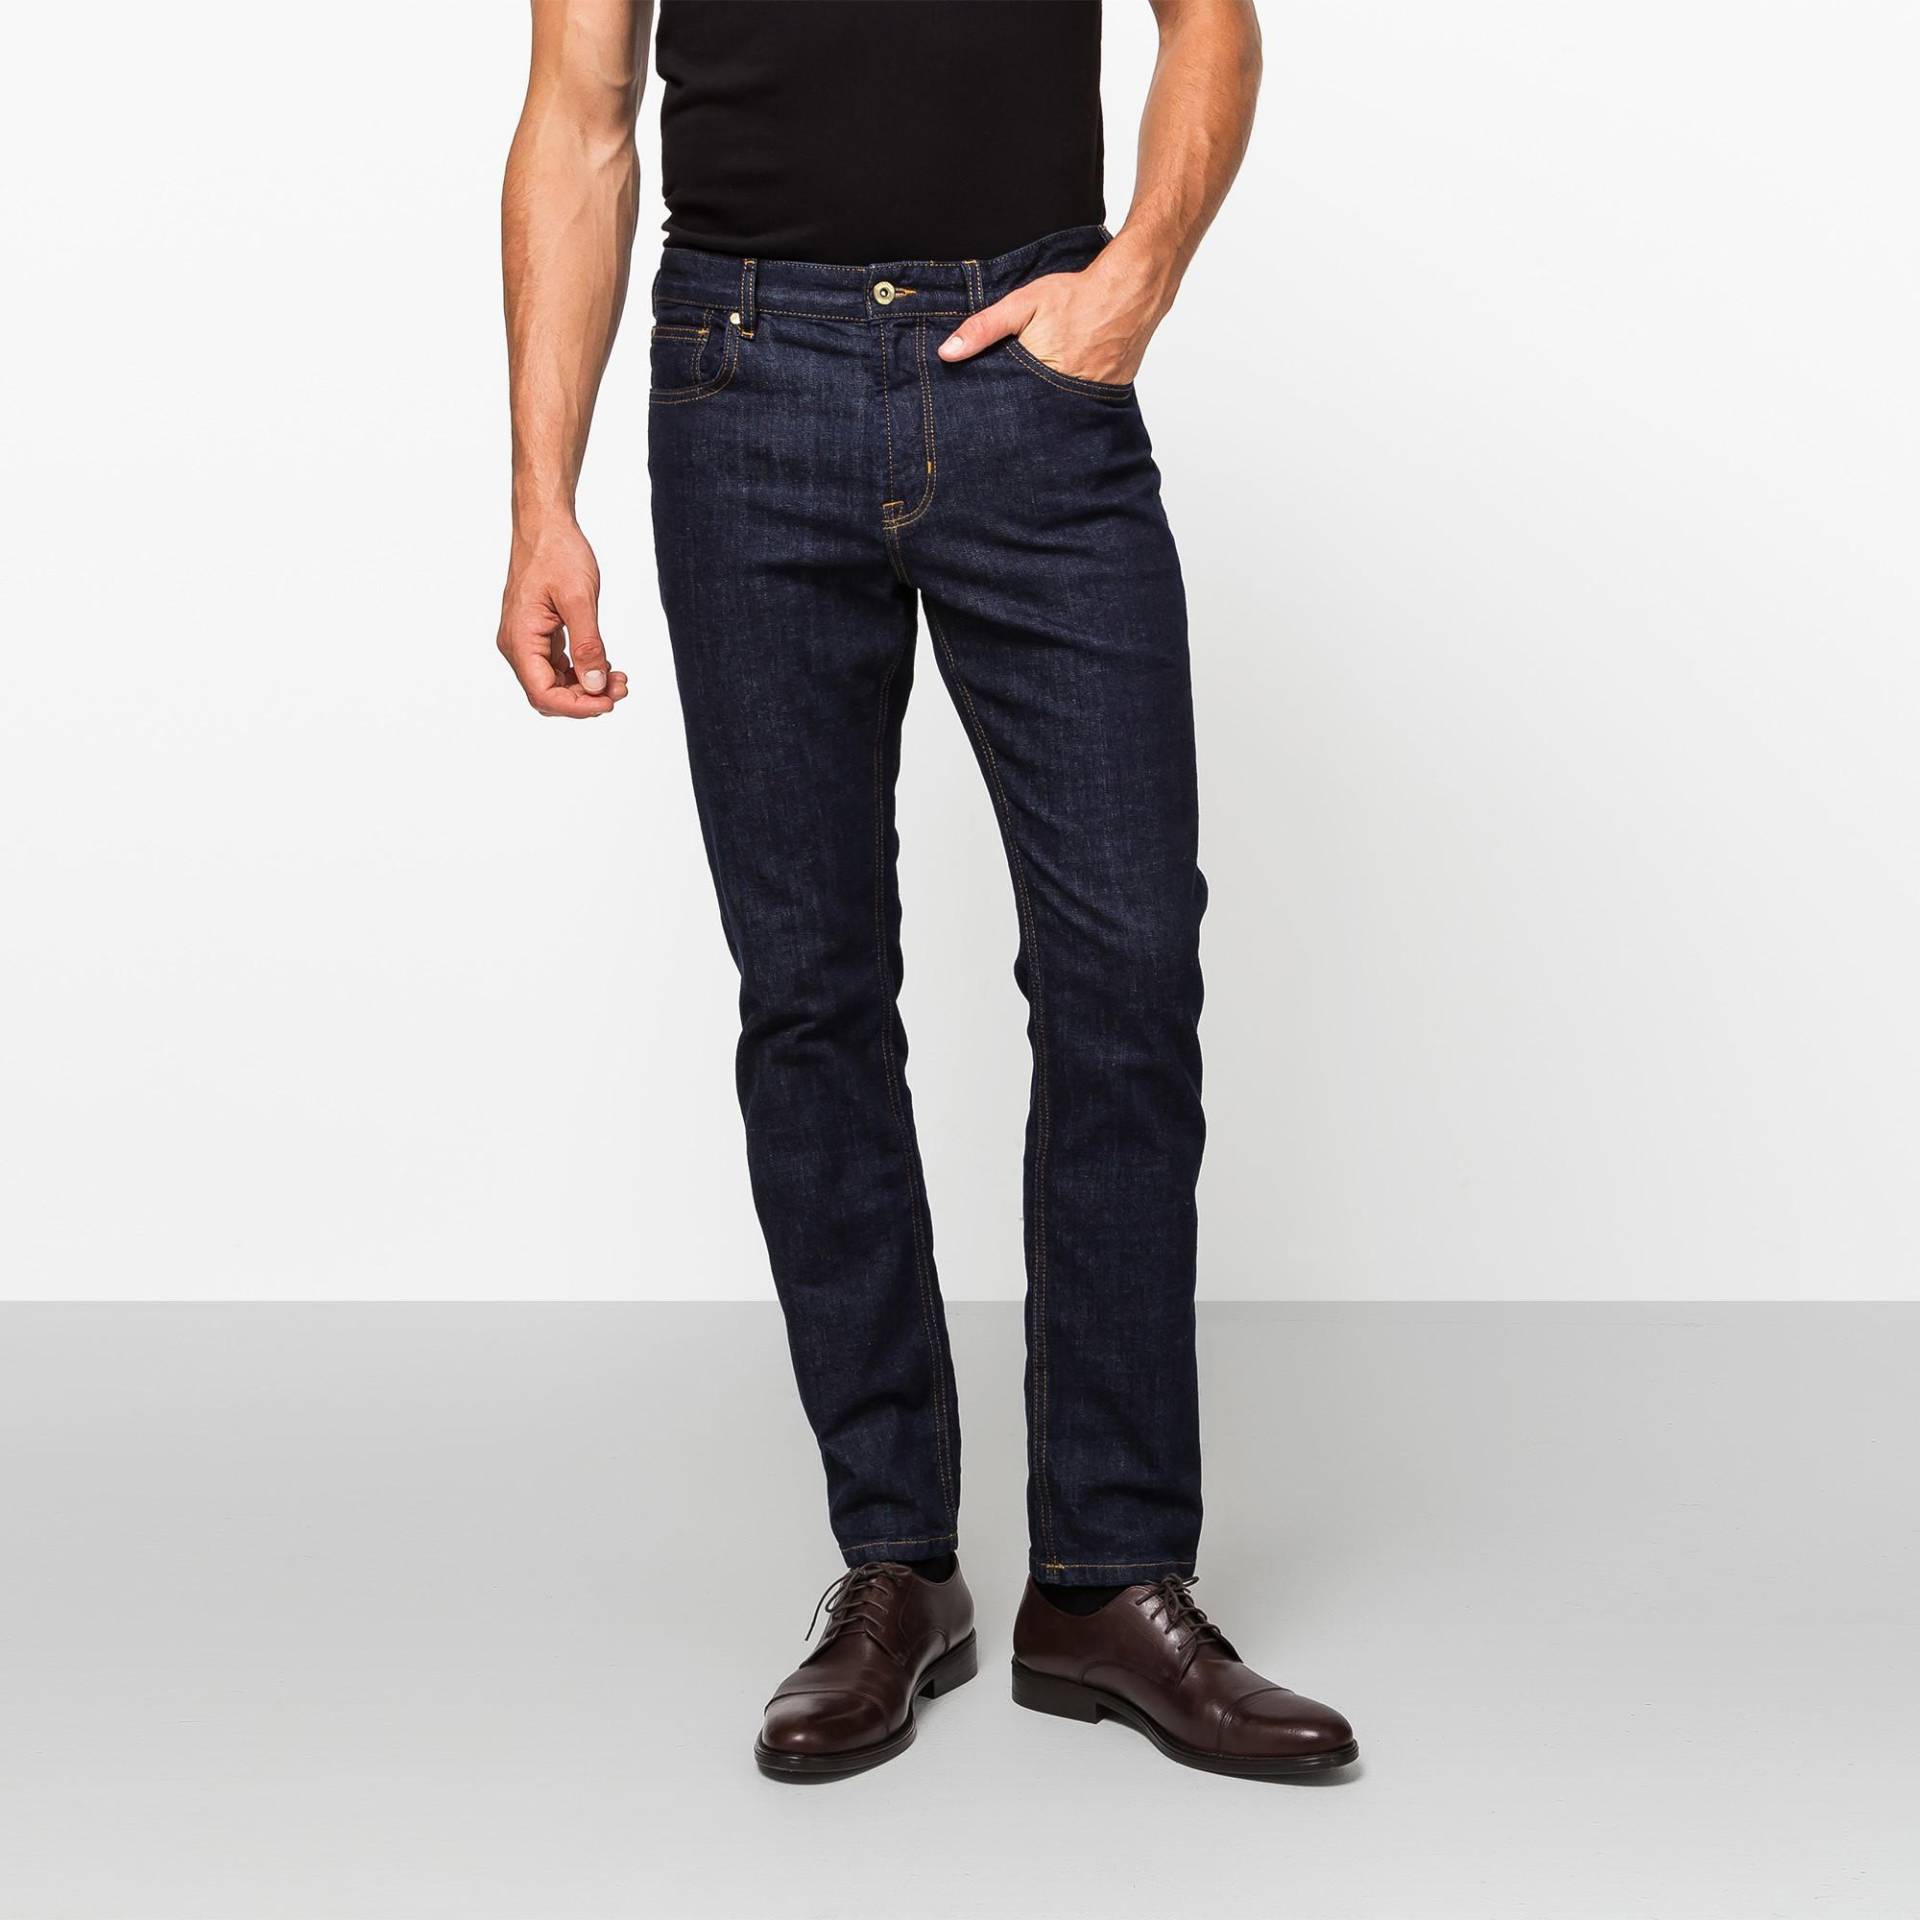 Jeans, Slim Fit Herren Blau Denim Dunkel L32/W40 von Manor Man